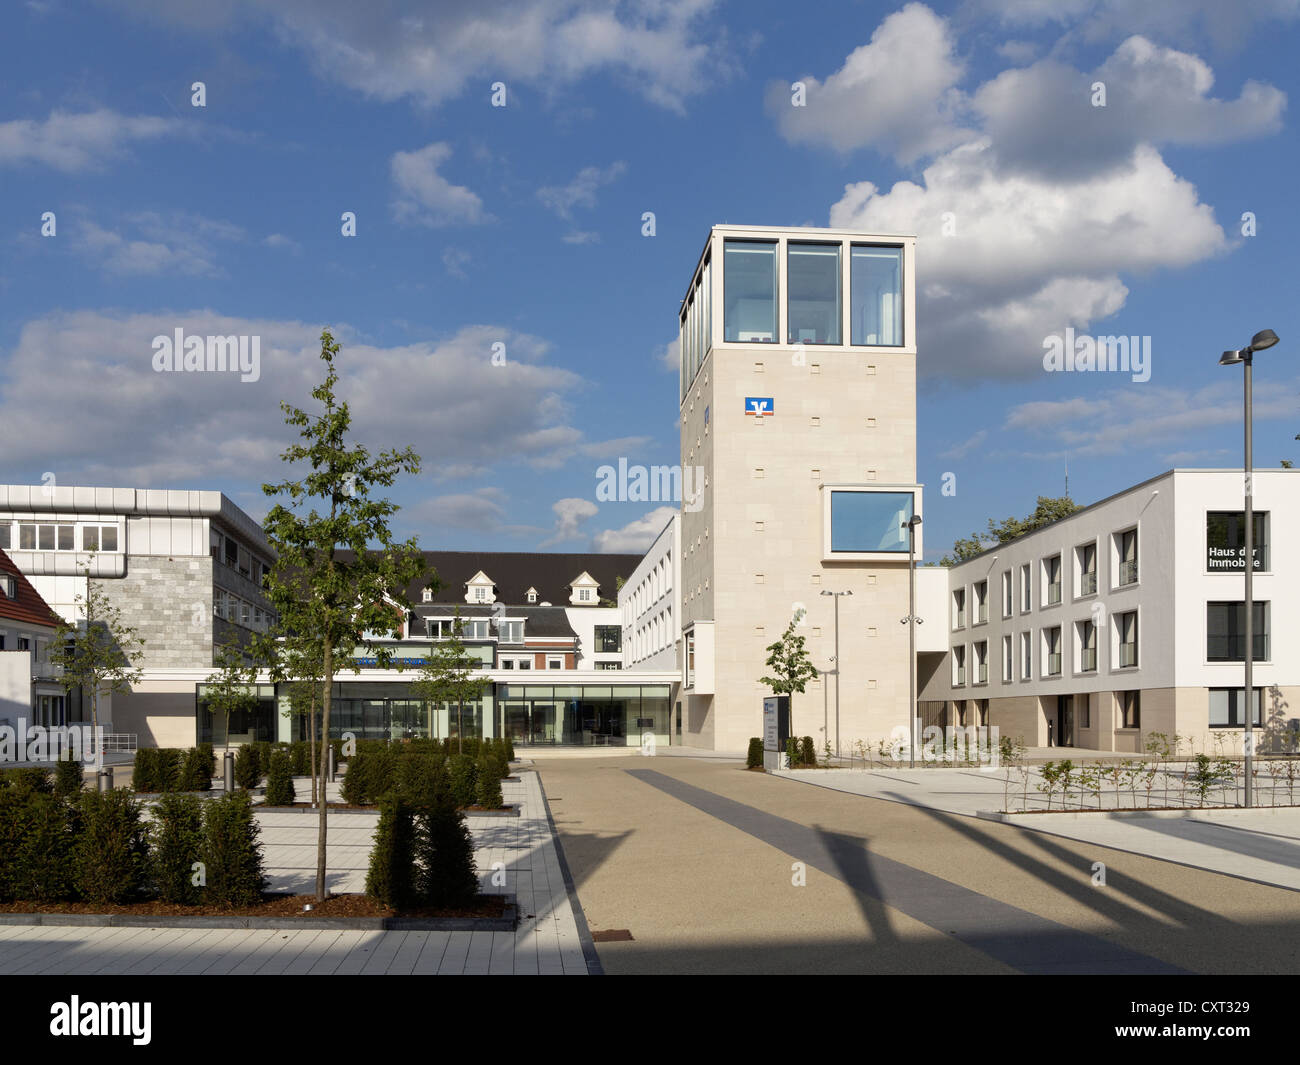 Volksbank Hamm eG, bank, in Bismarckstrasse street, Hamm, North Rhine-Westphalia, Germany, Europe, PublicGround Stock Photo